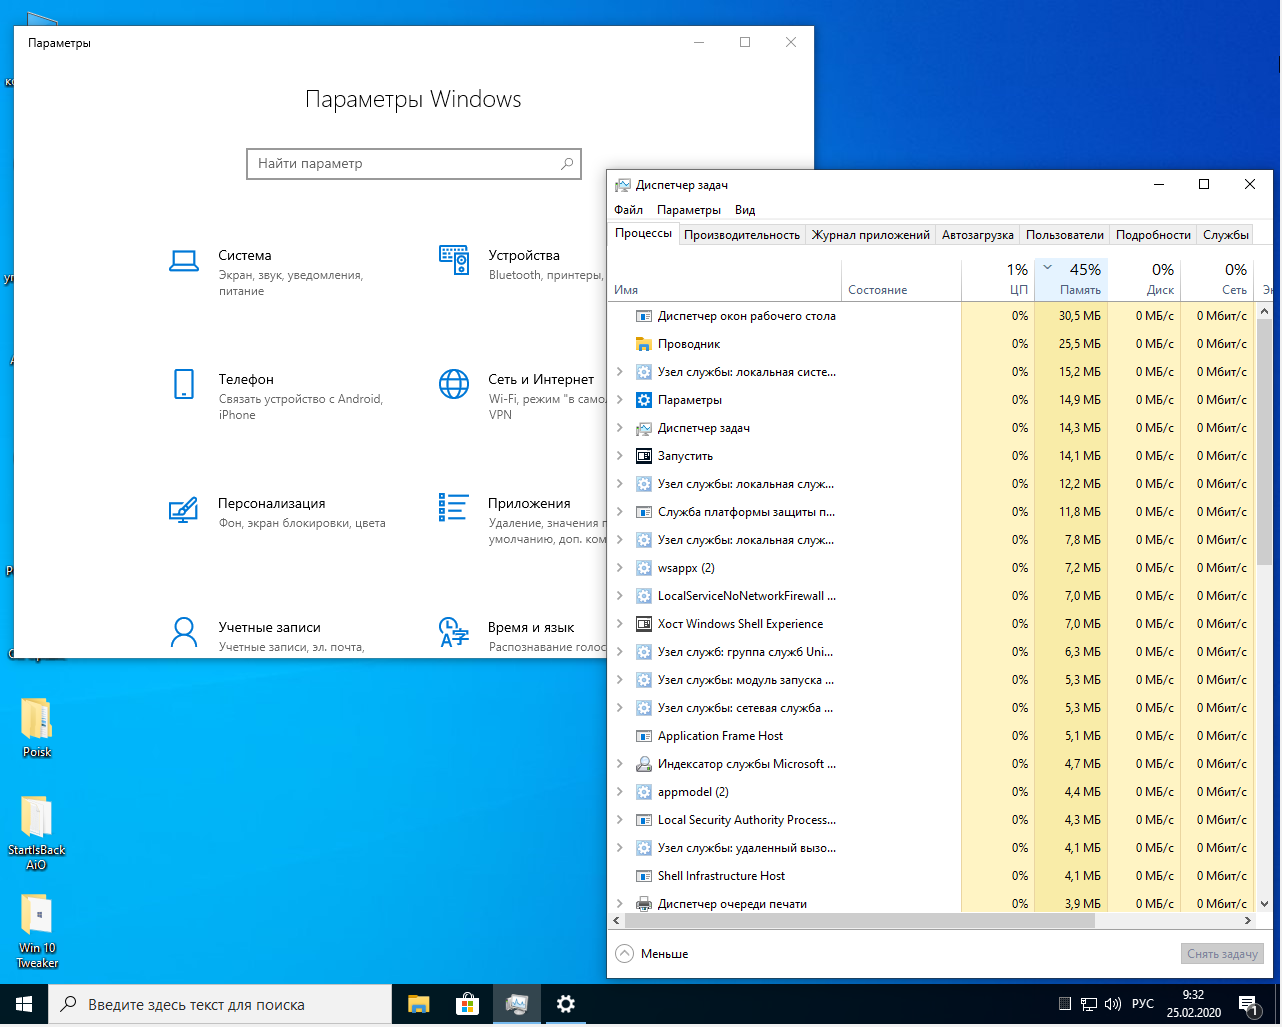 Сборки виндовс для слабых ноутбуков. Самая легкая Windows. Windows 10 сборка для слабых ПК. Лёгкая версия Windows 10 для слабых ноутбуков.